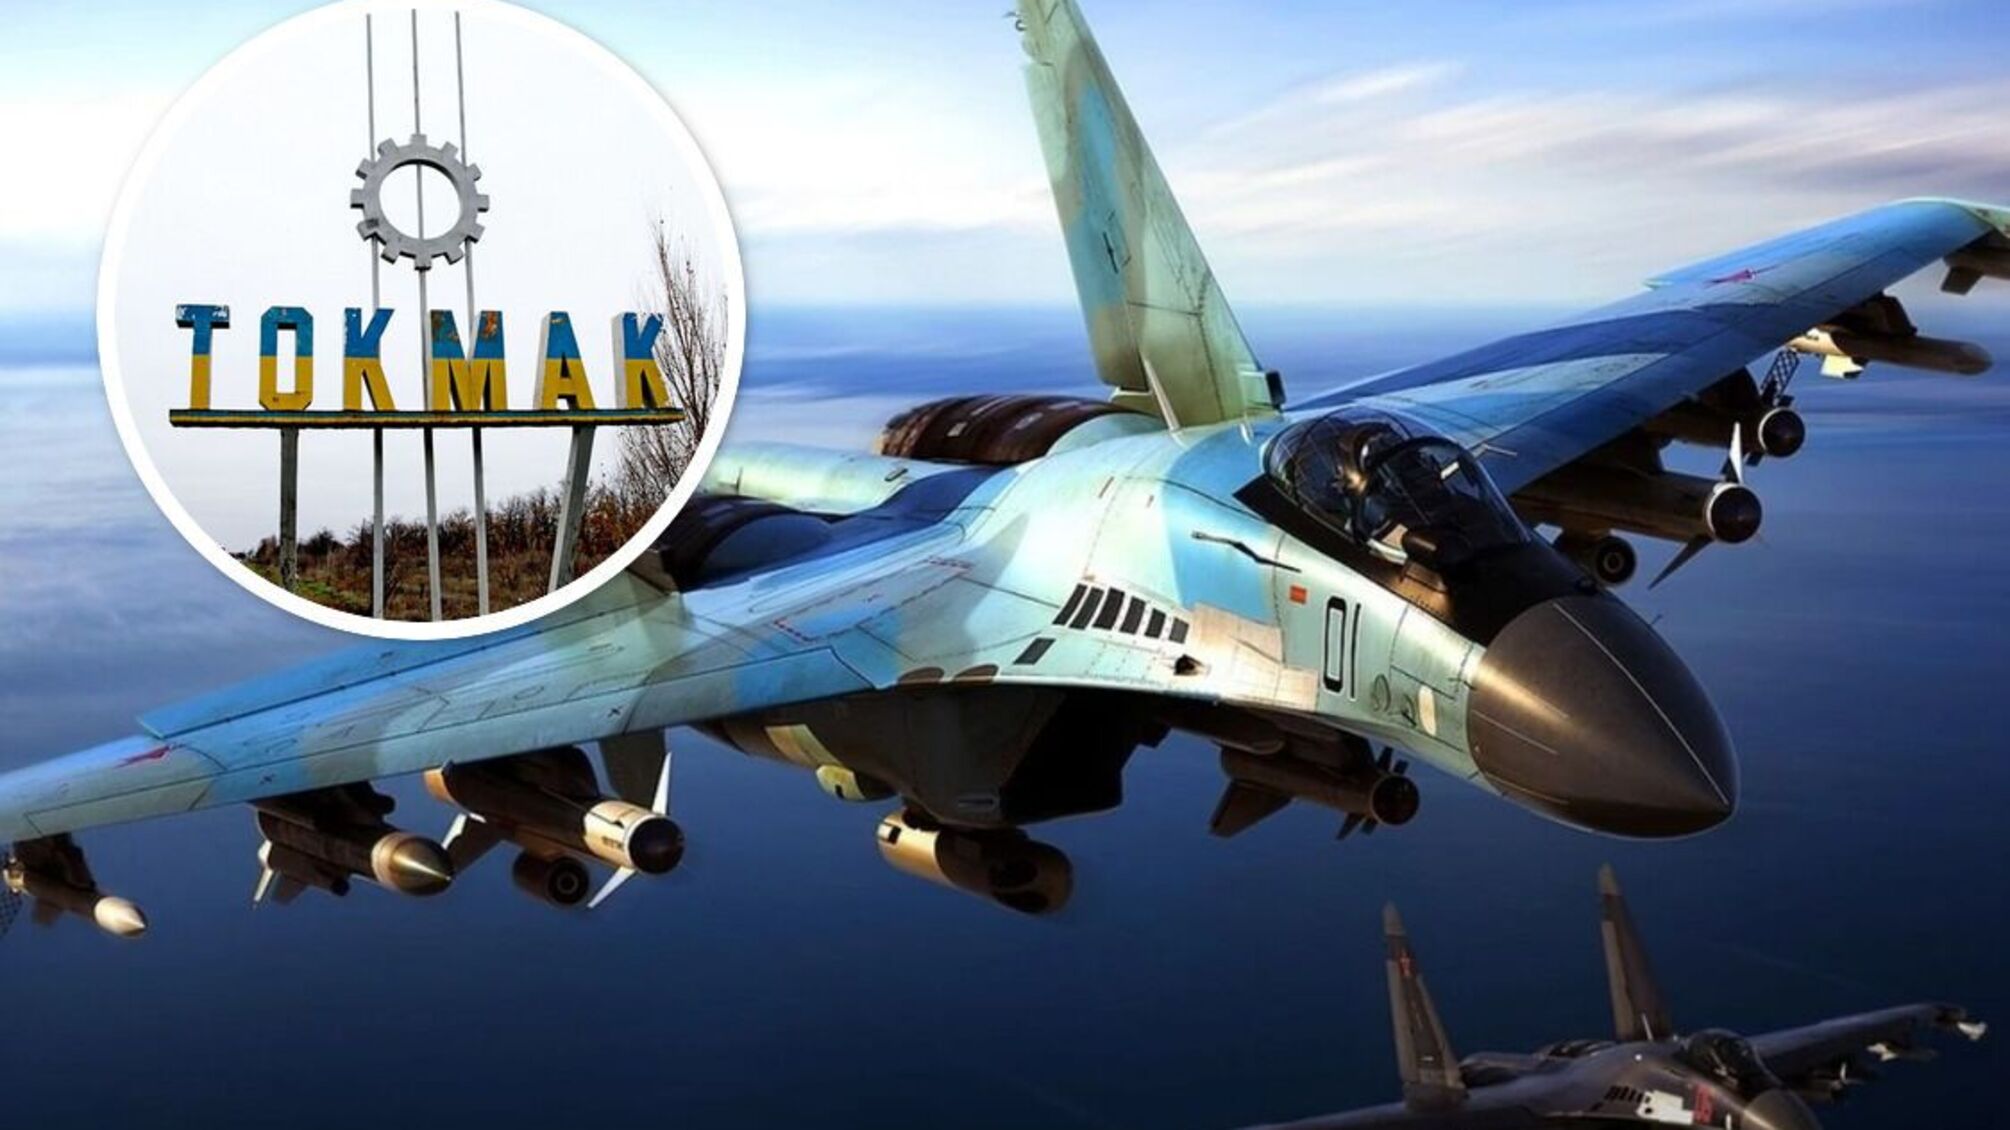 Під Токмаком 'приземлили' дорогоцінний російський літак Су-35 - що відомо